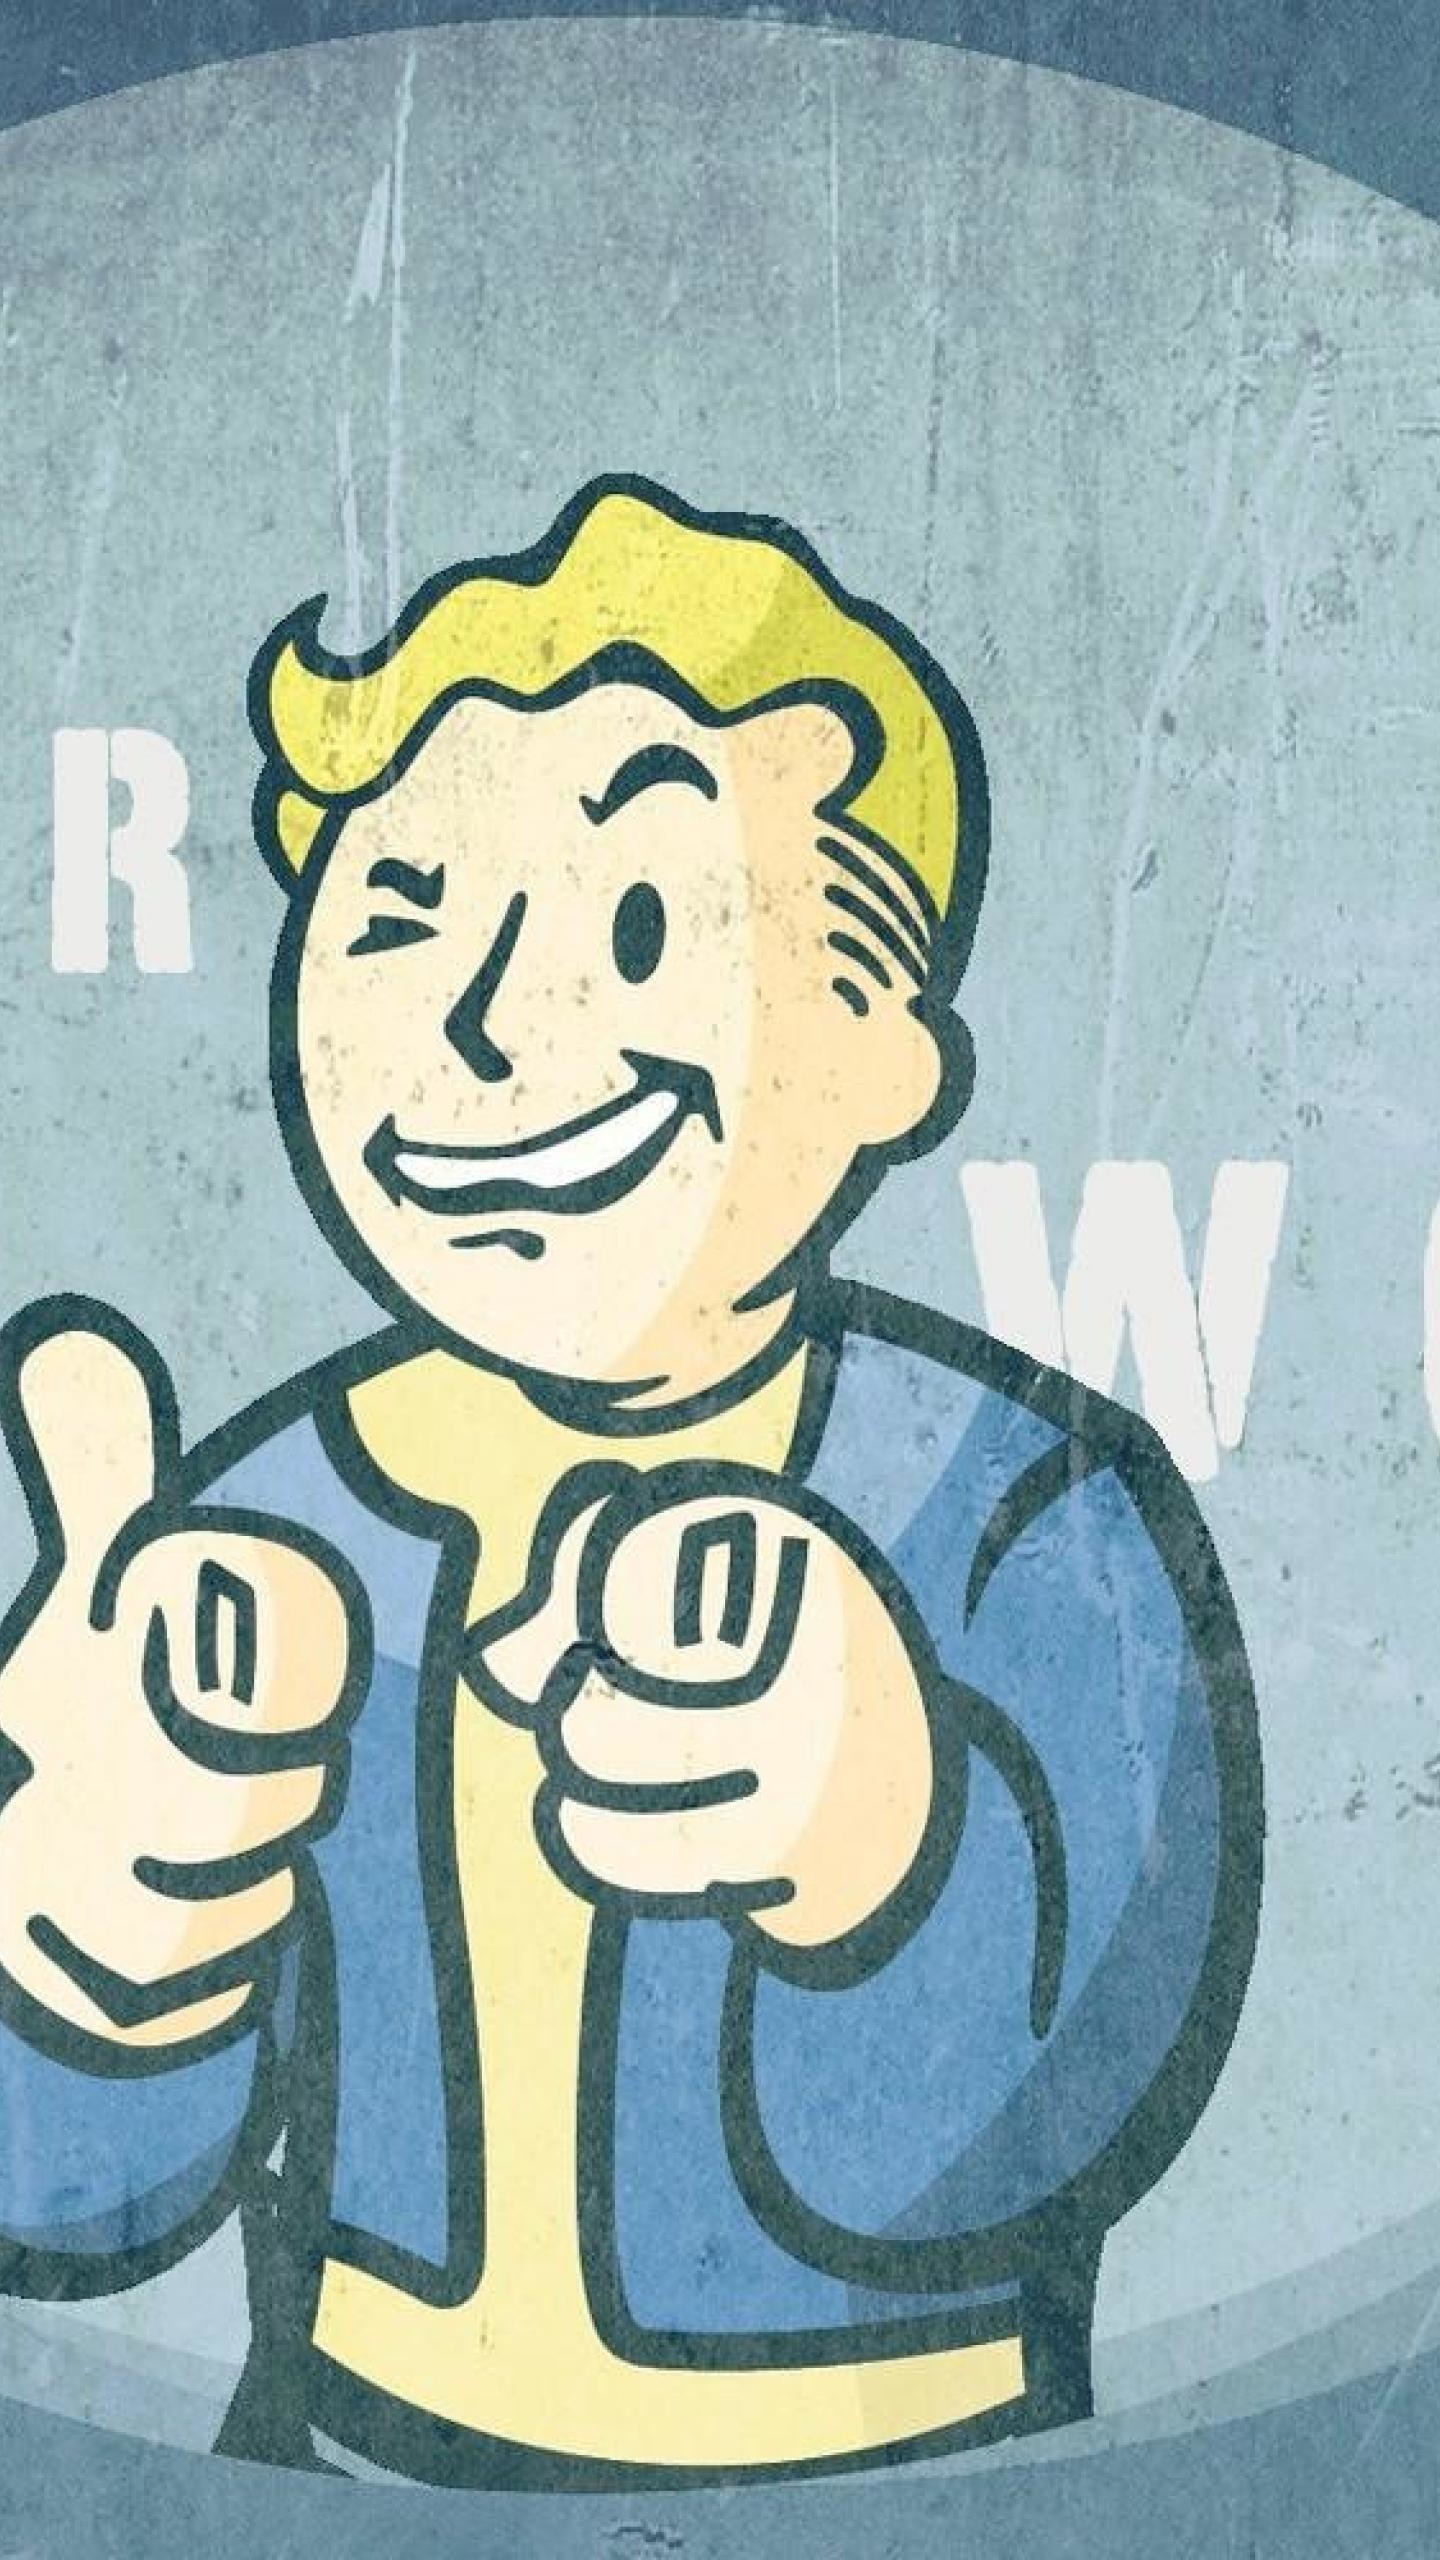 Vault boy Pipboy Fallout 3 HD Wallpapers, Desktop Backgrounds .